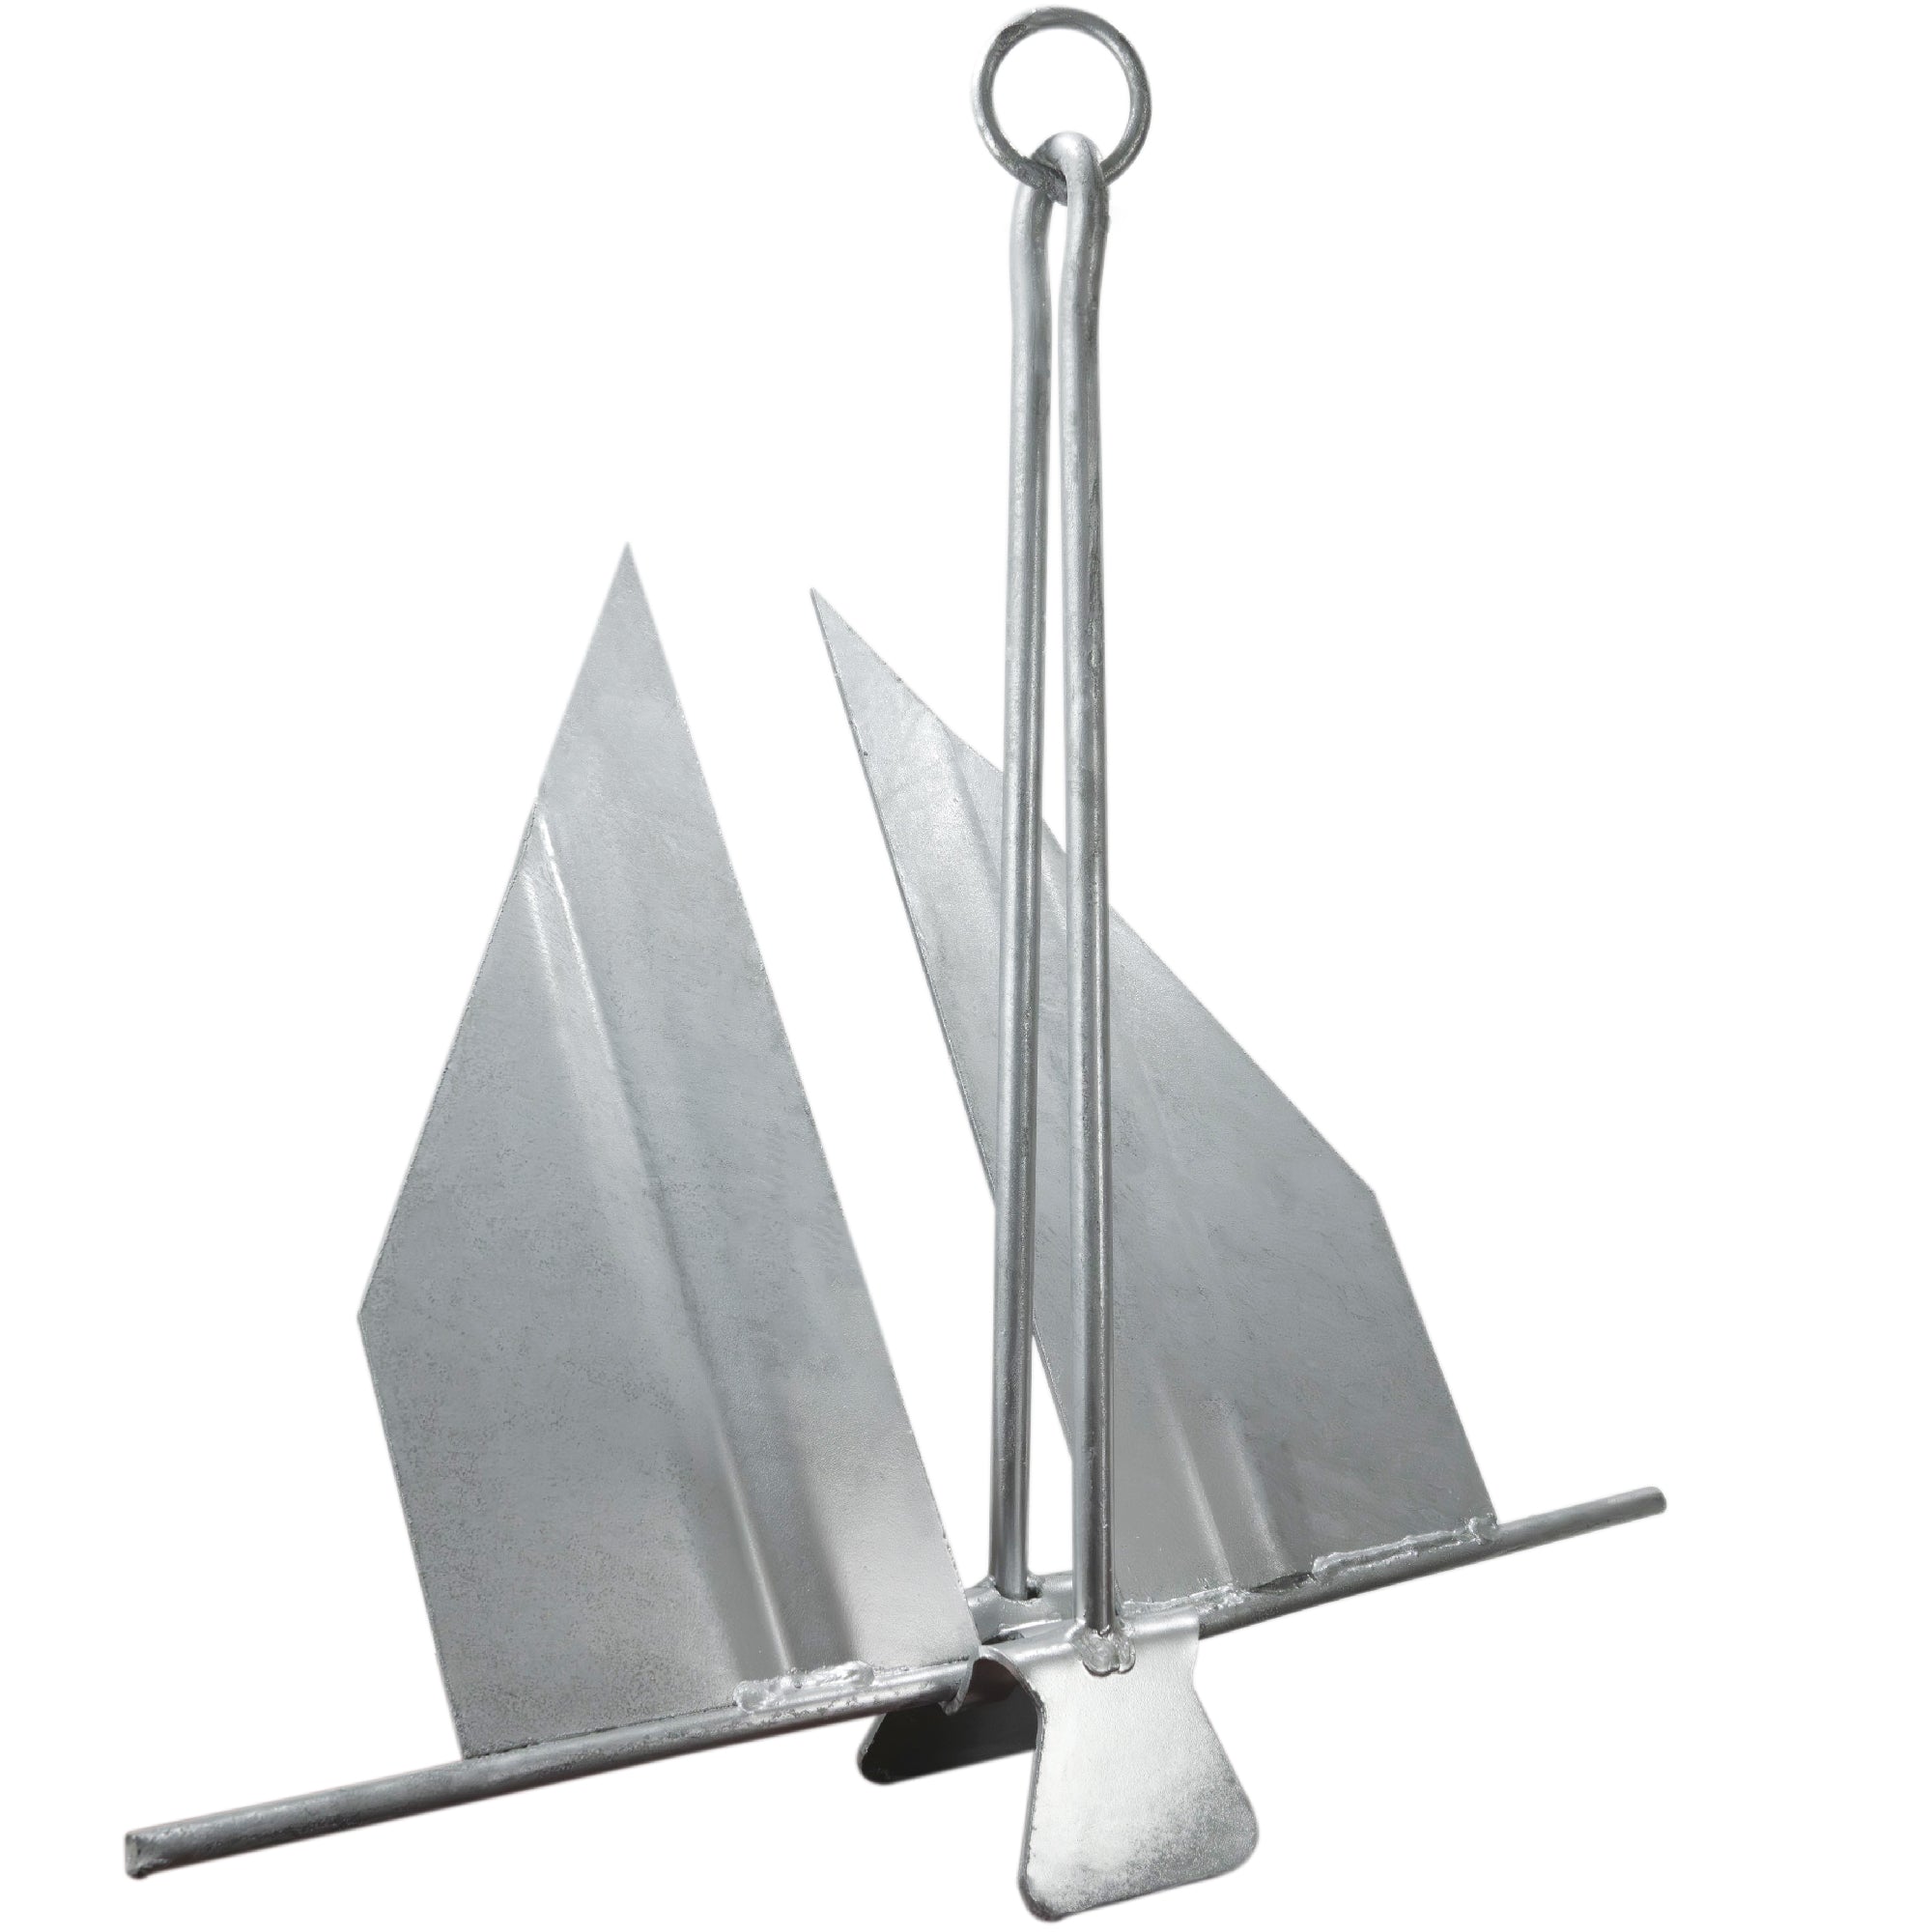 Boat Fluke Anchor, 8 Lb Easy-Release Galvanized Steel, Slip Ring Shank - FO4624